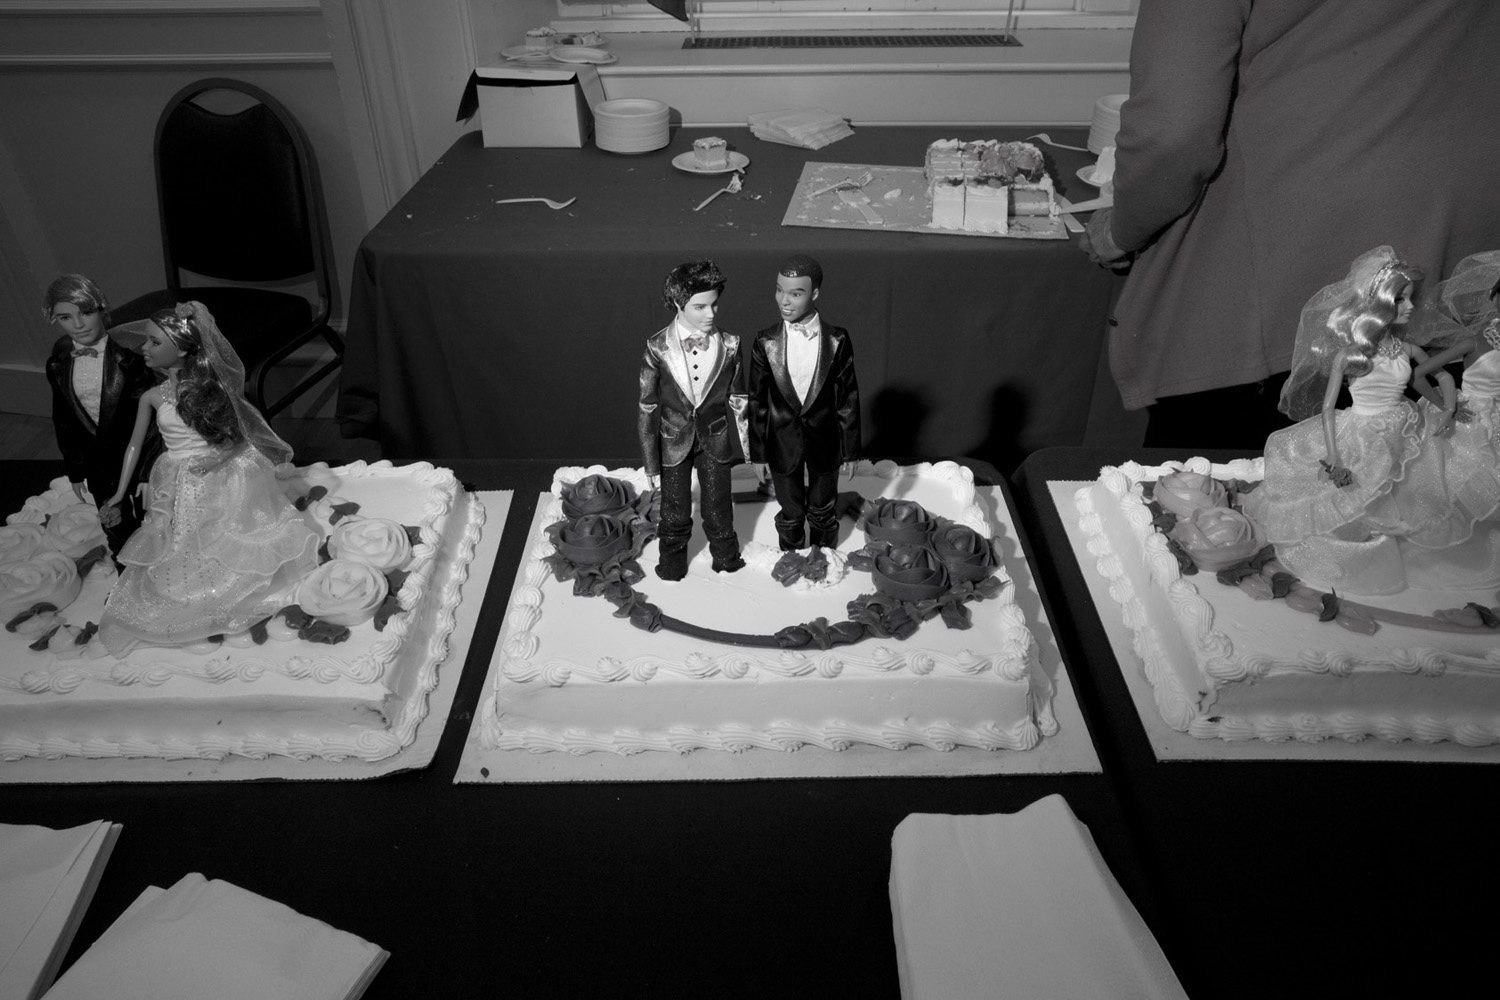 Wedding cake at Brooklyn Borough Hall.